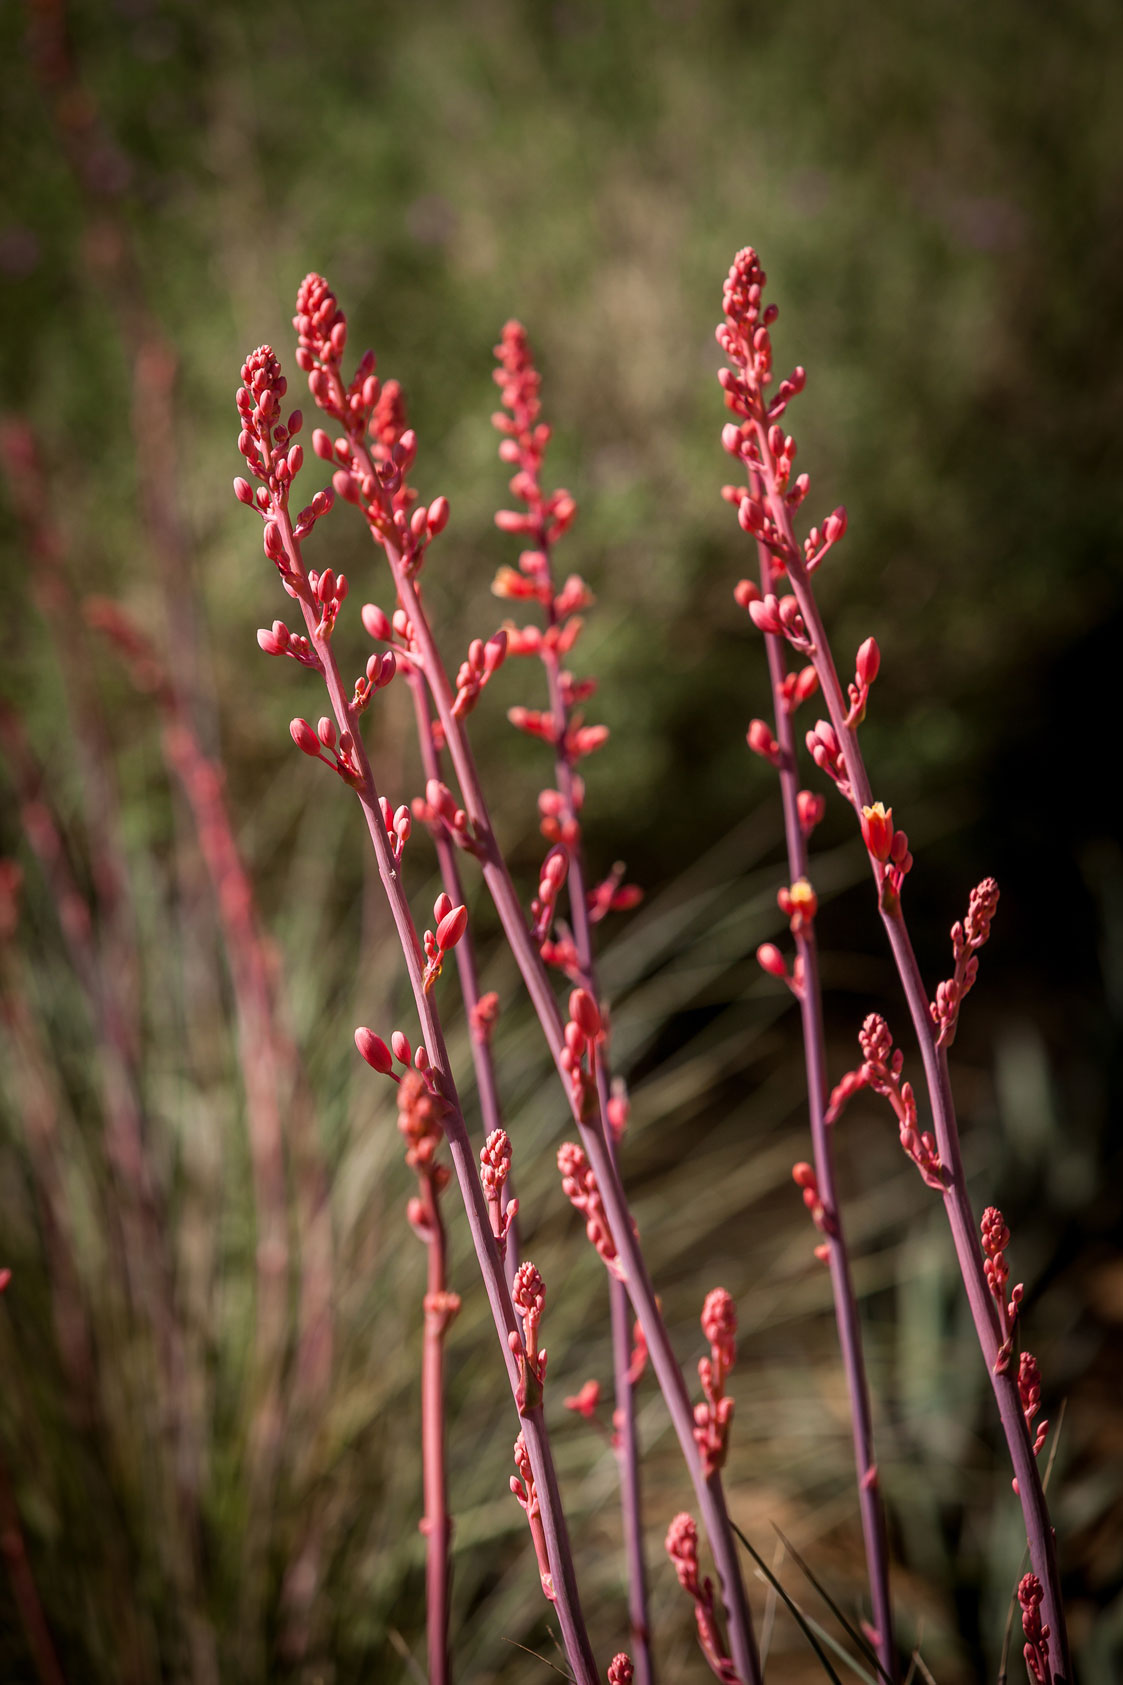 Multiple stalks full of Red Hesperaloe flowers.